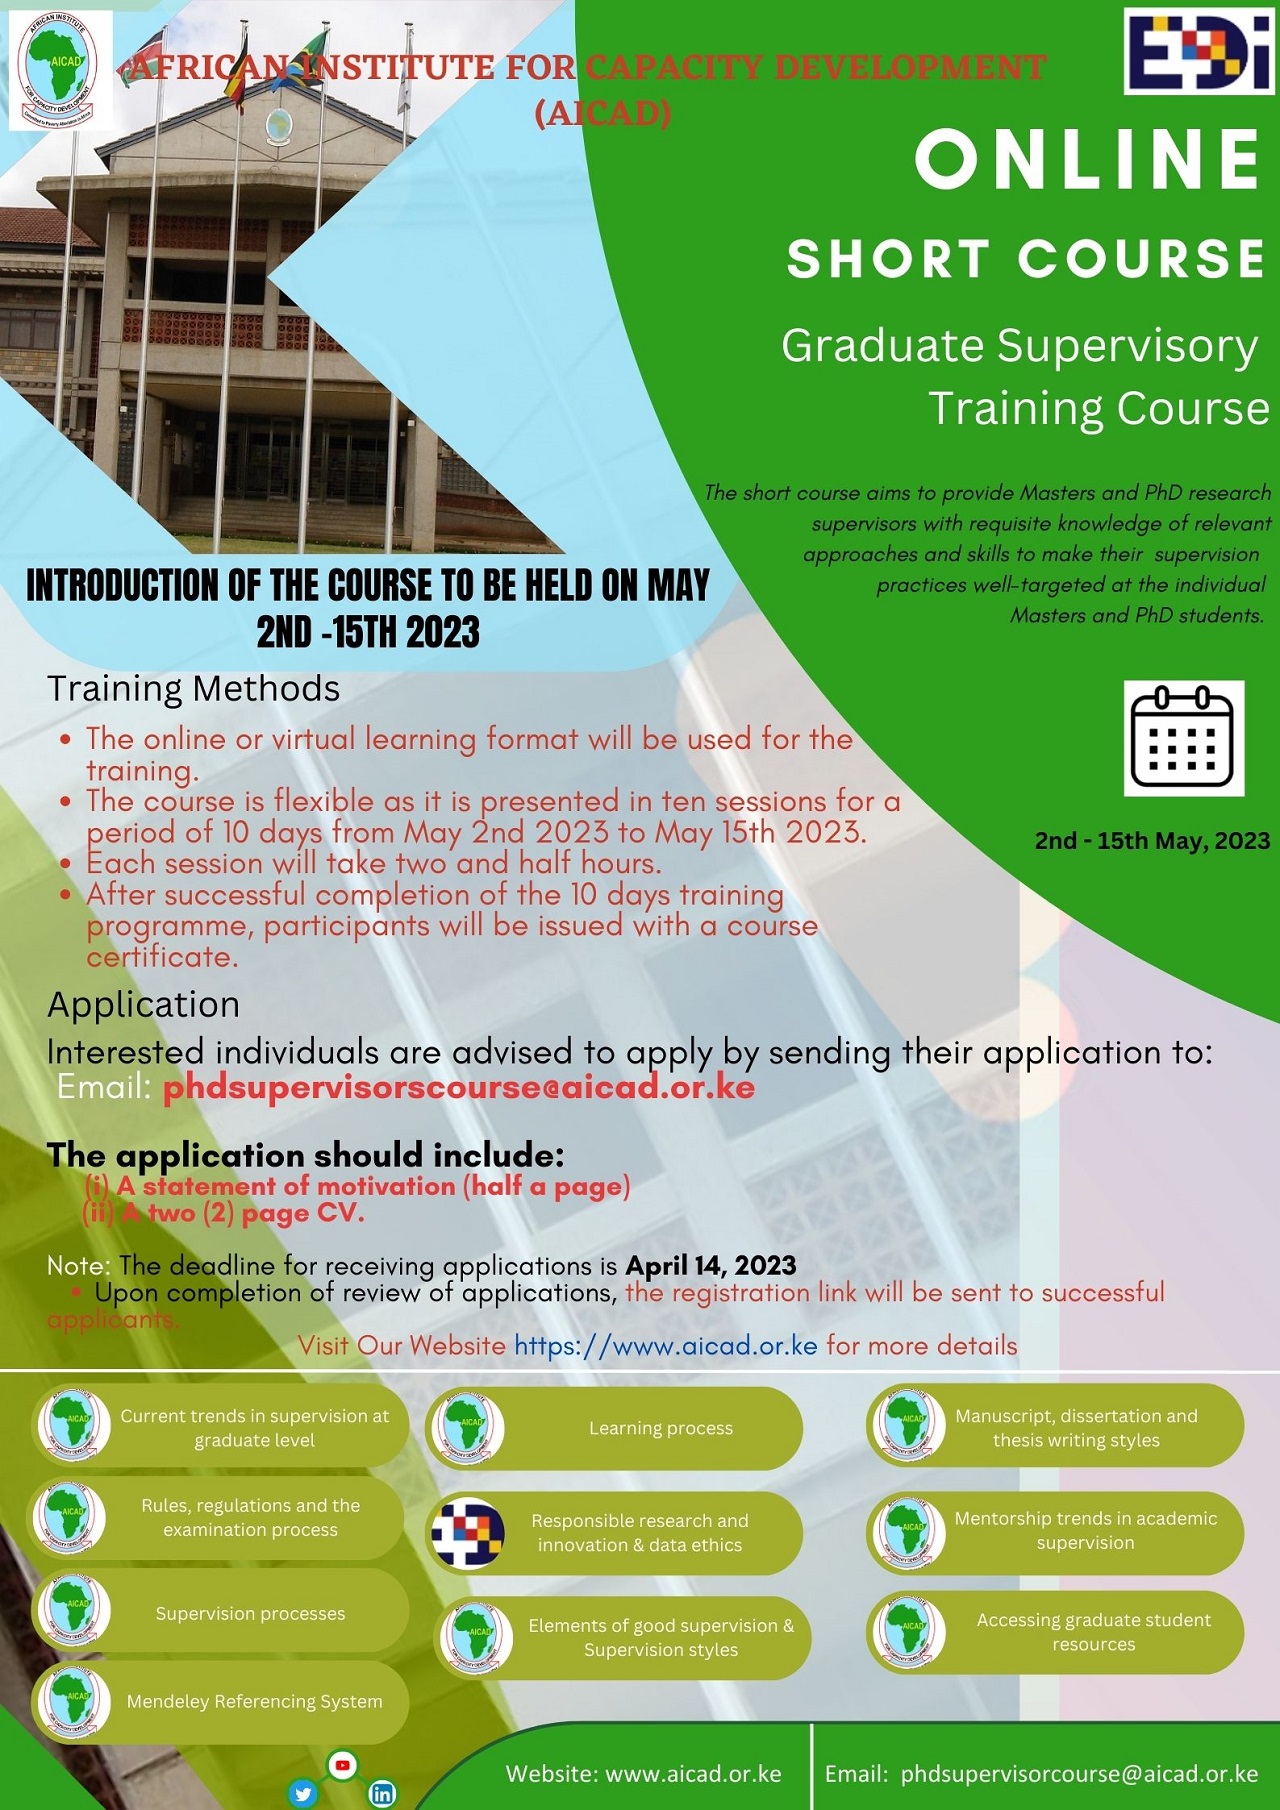 ONLINE SHORT COURSE-Graduate Supervisory Training Course